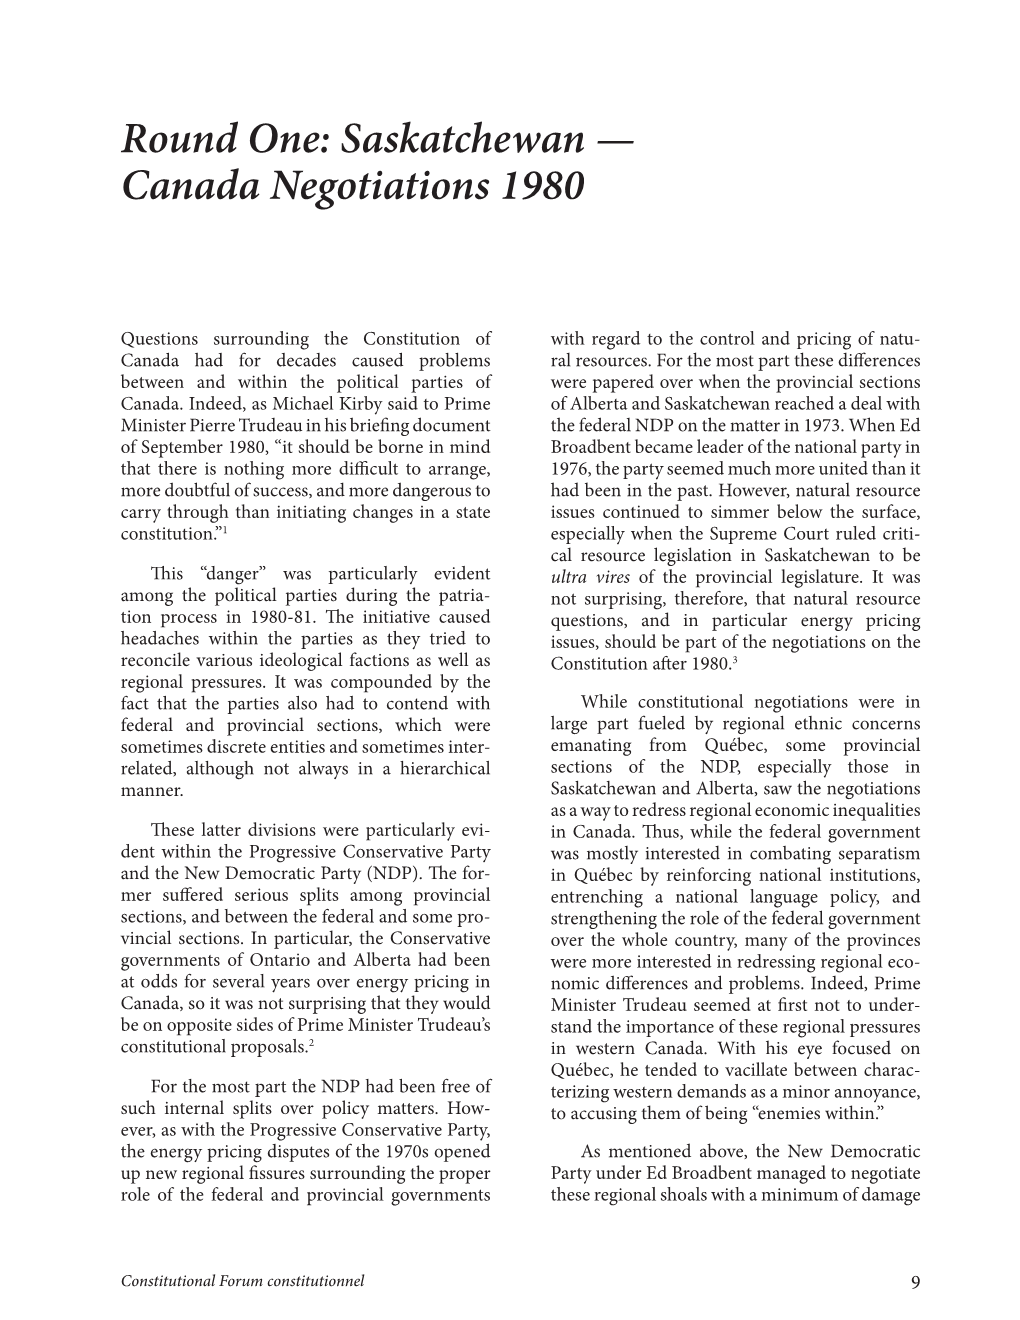 Canada Negotiations 1980